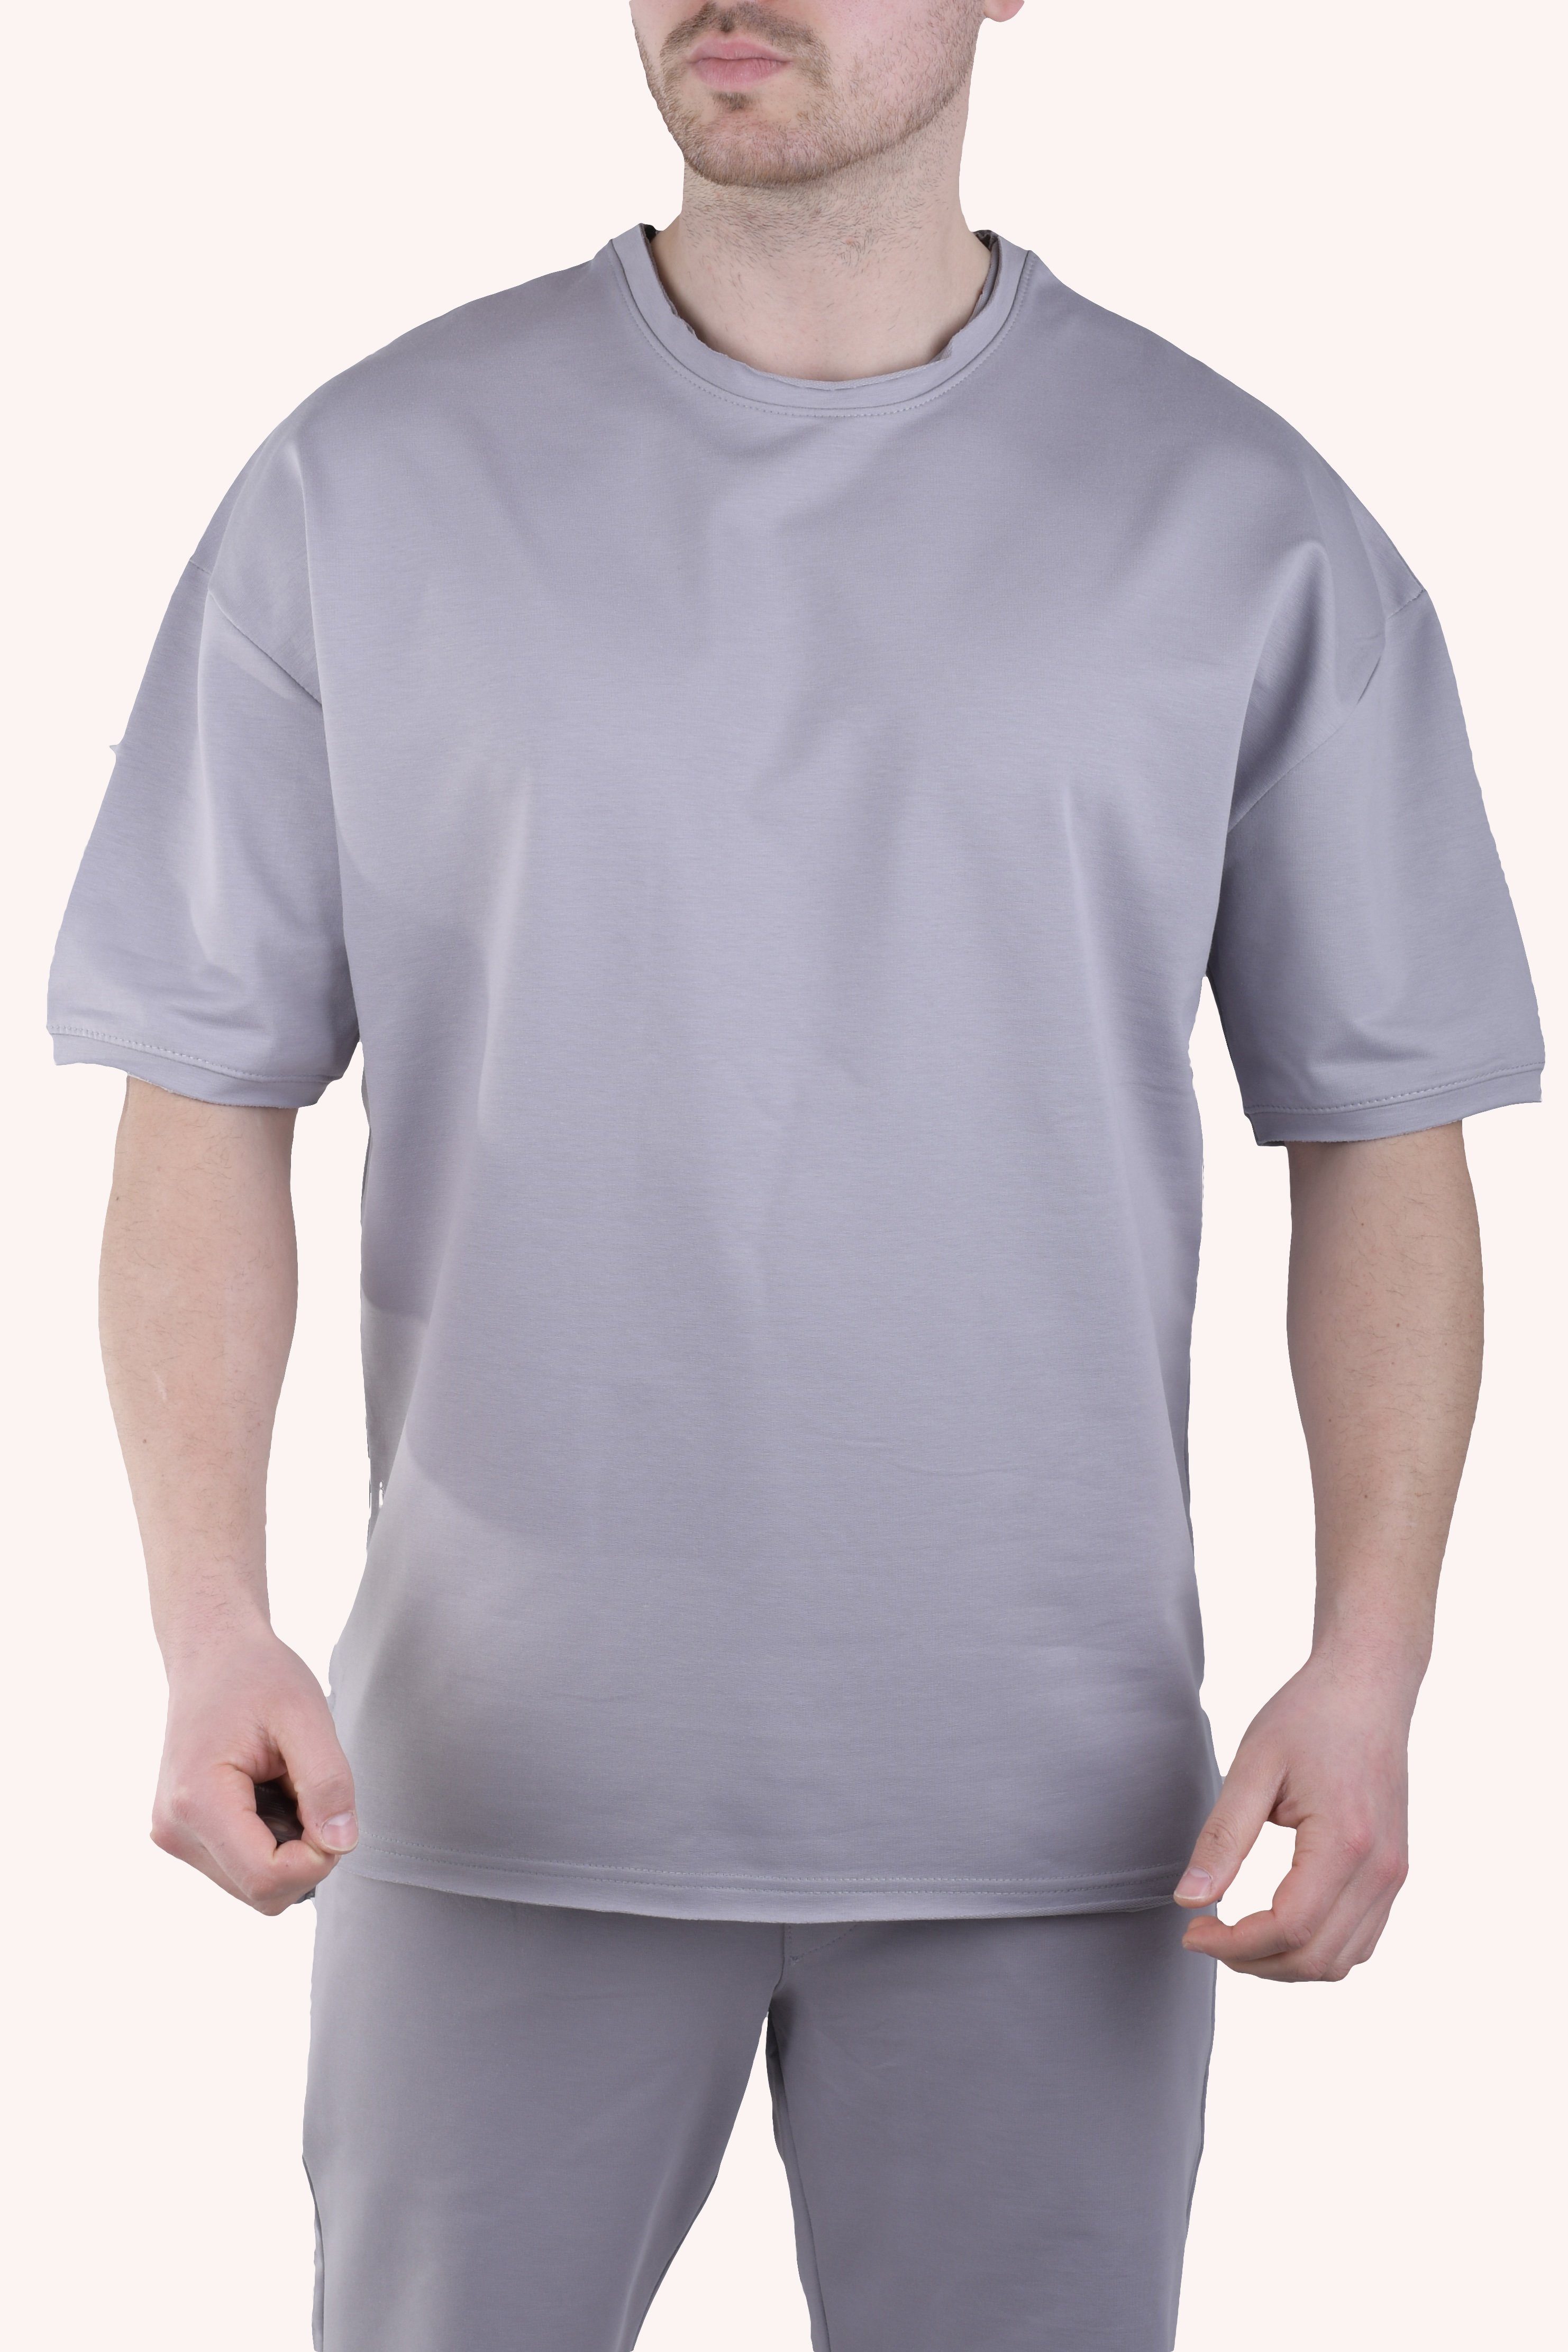 Megaman Jeans T-Shirt Herren T-Shirt Oversize Sommer Shirt Megaman TS5011 M Weiß Grau | T-Shirts